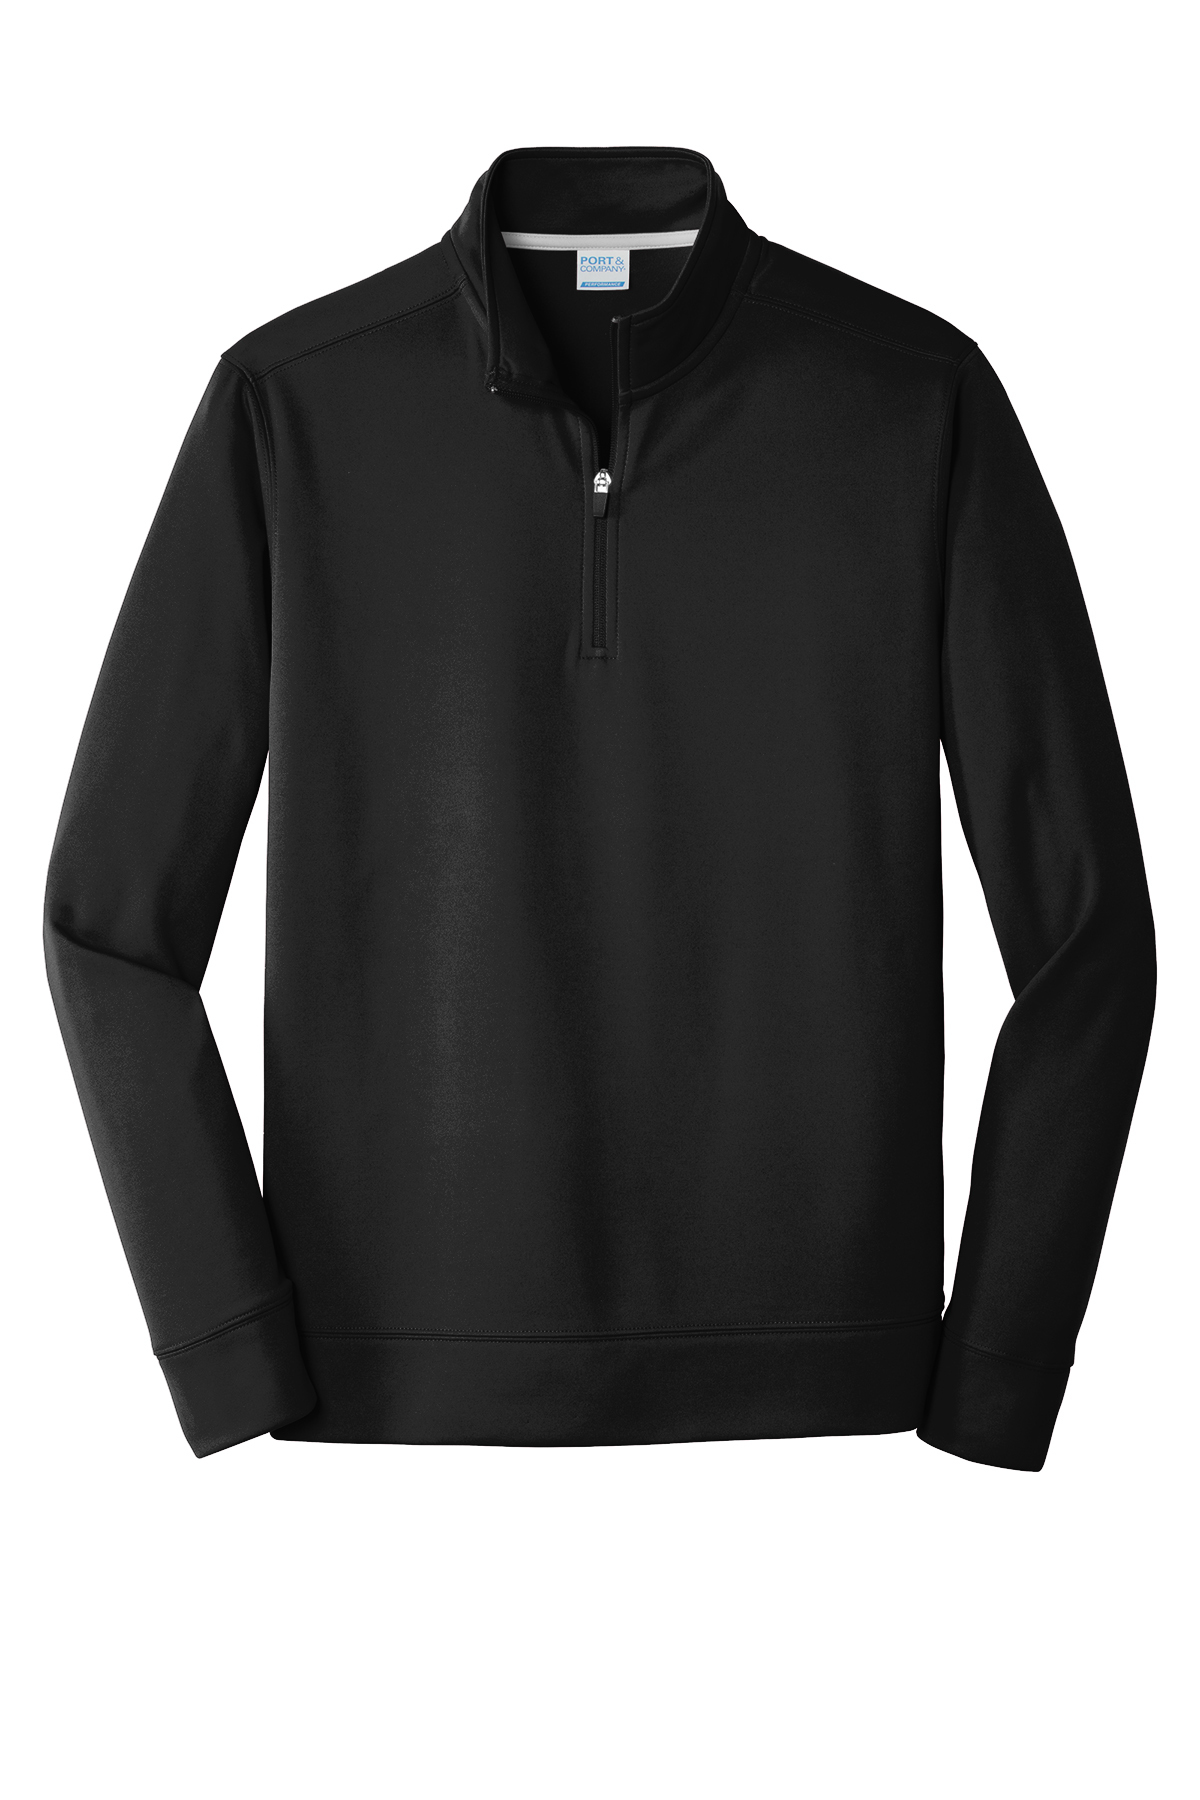 Port & Company ® Performance Fleece 1/4-Zip Pullover Sweatshirt ...